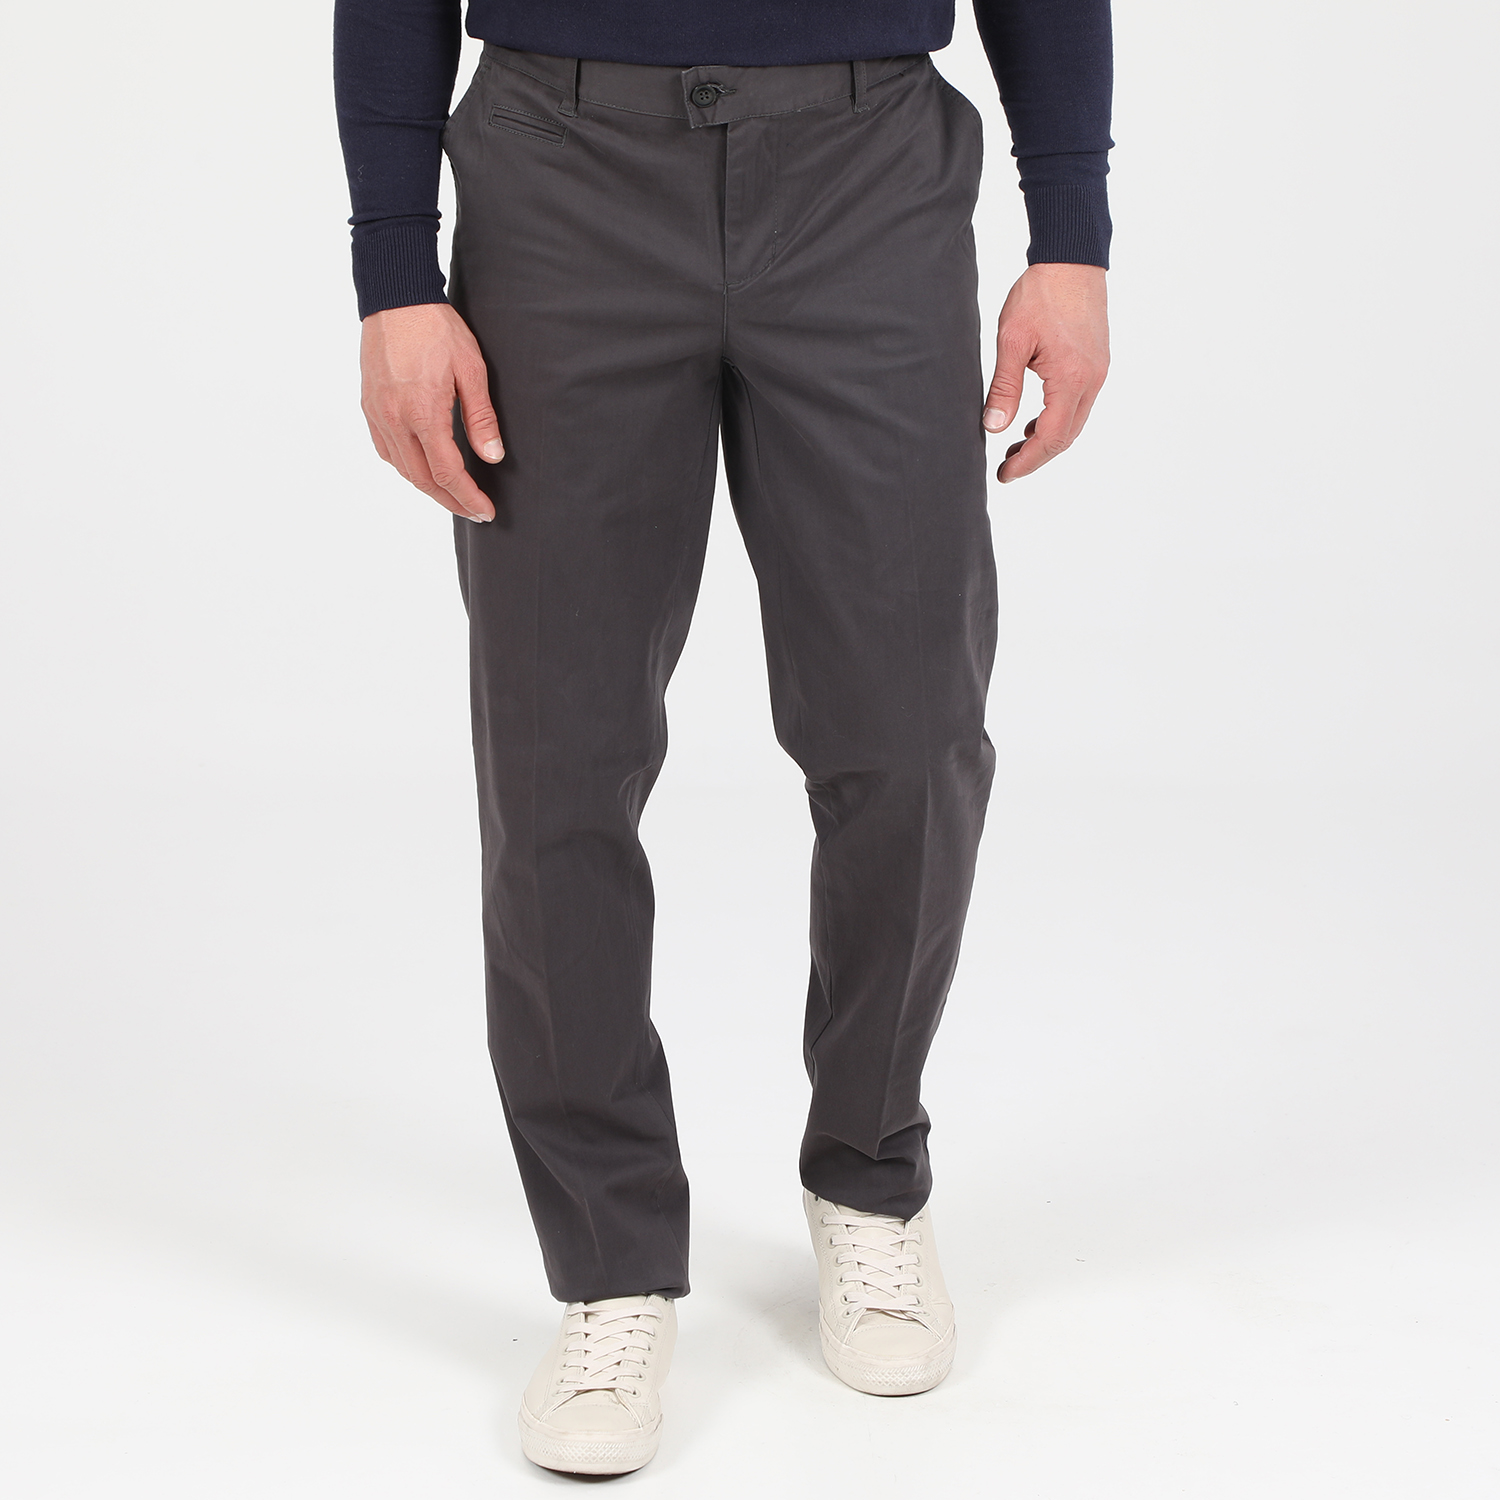 Ανδρικά/Ρούχα/Παντελόνια/Chinos MARTIN & CO - Ανδρικό παντελόνι MARTIN & CO SLIM CHINOS γκρι